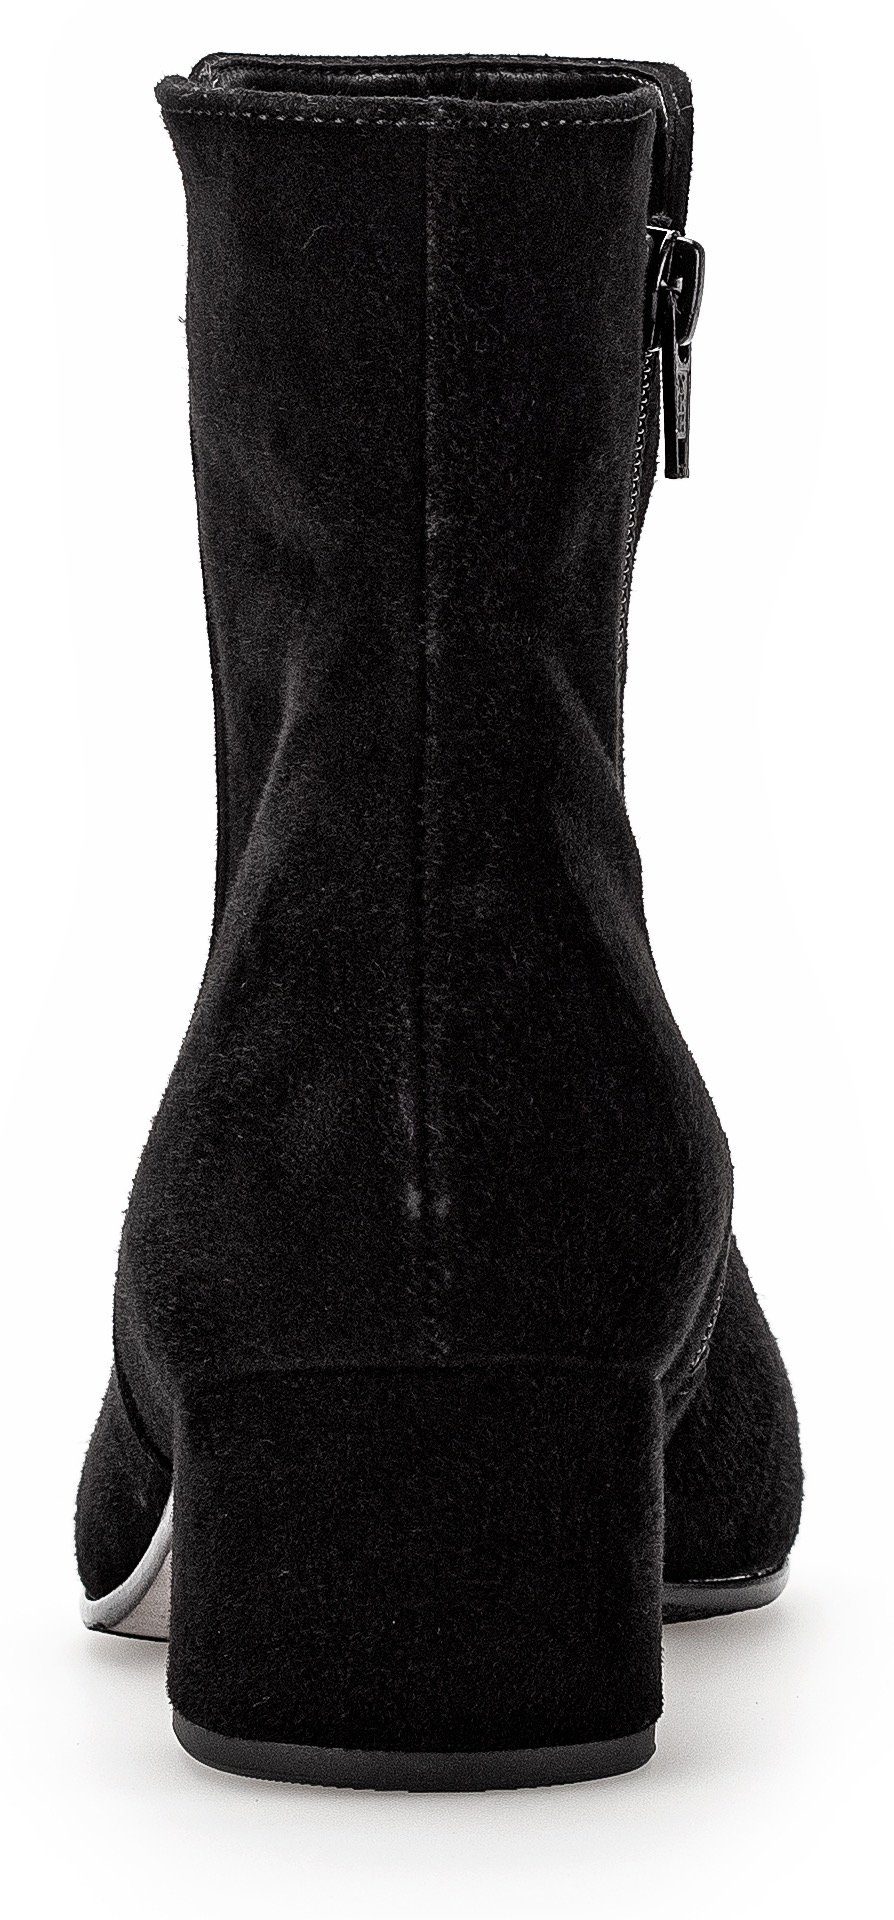 Stiefelette Best mit schwarz Gabor Fitting-Ausstattung